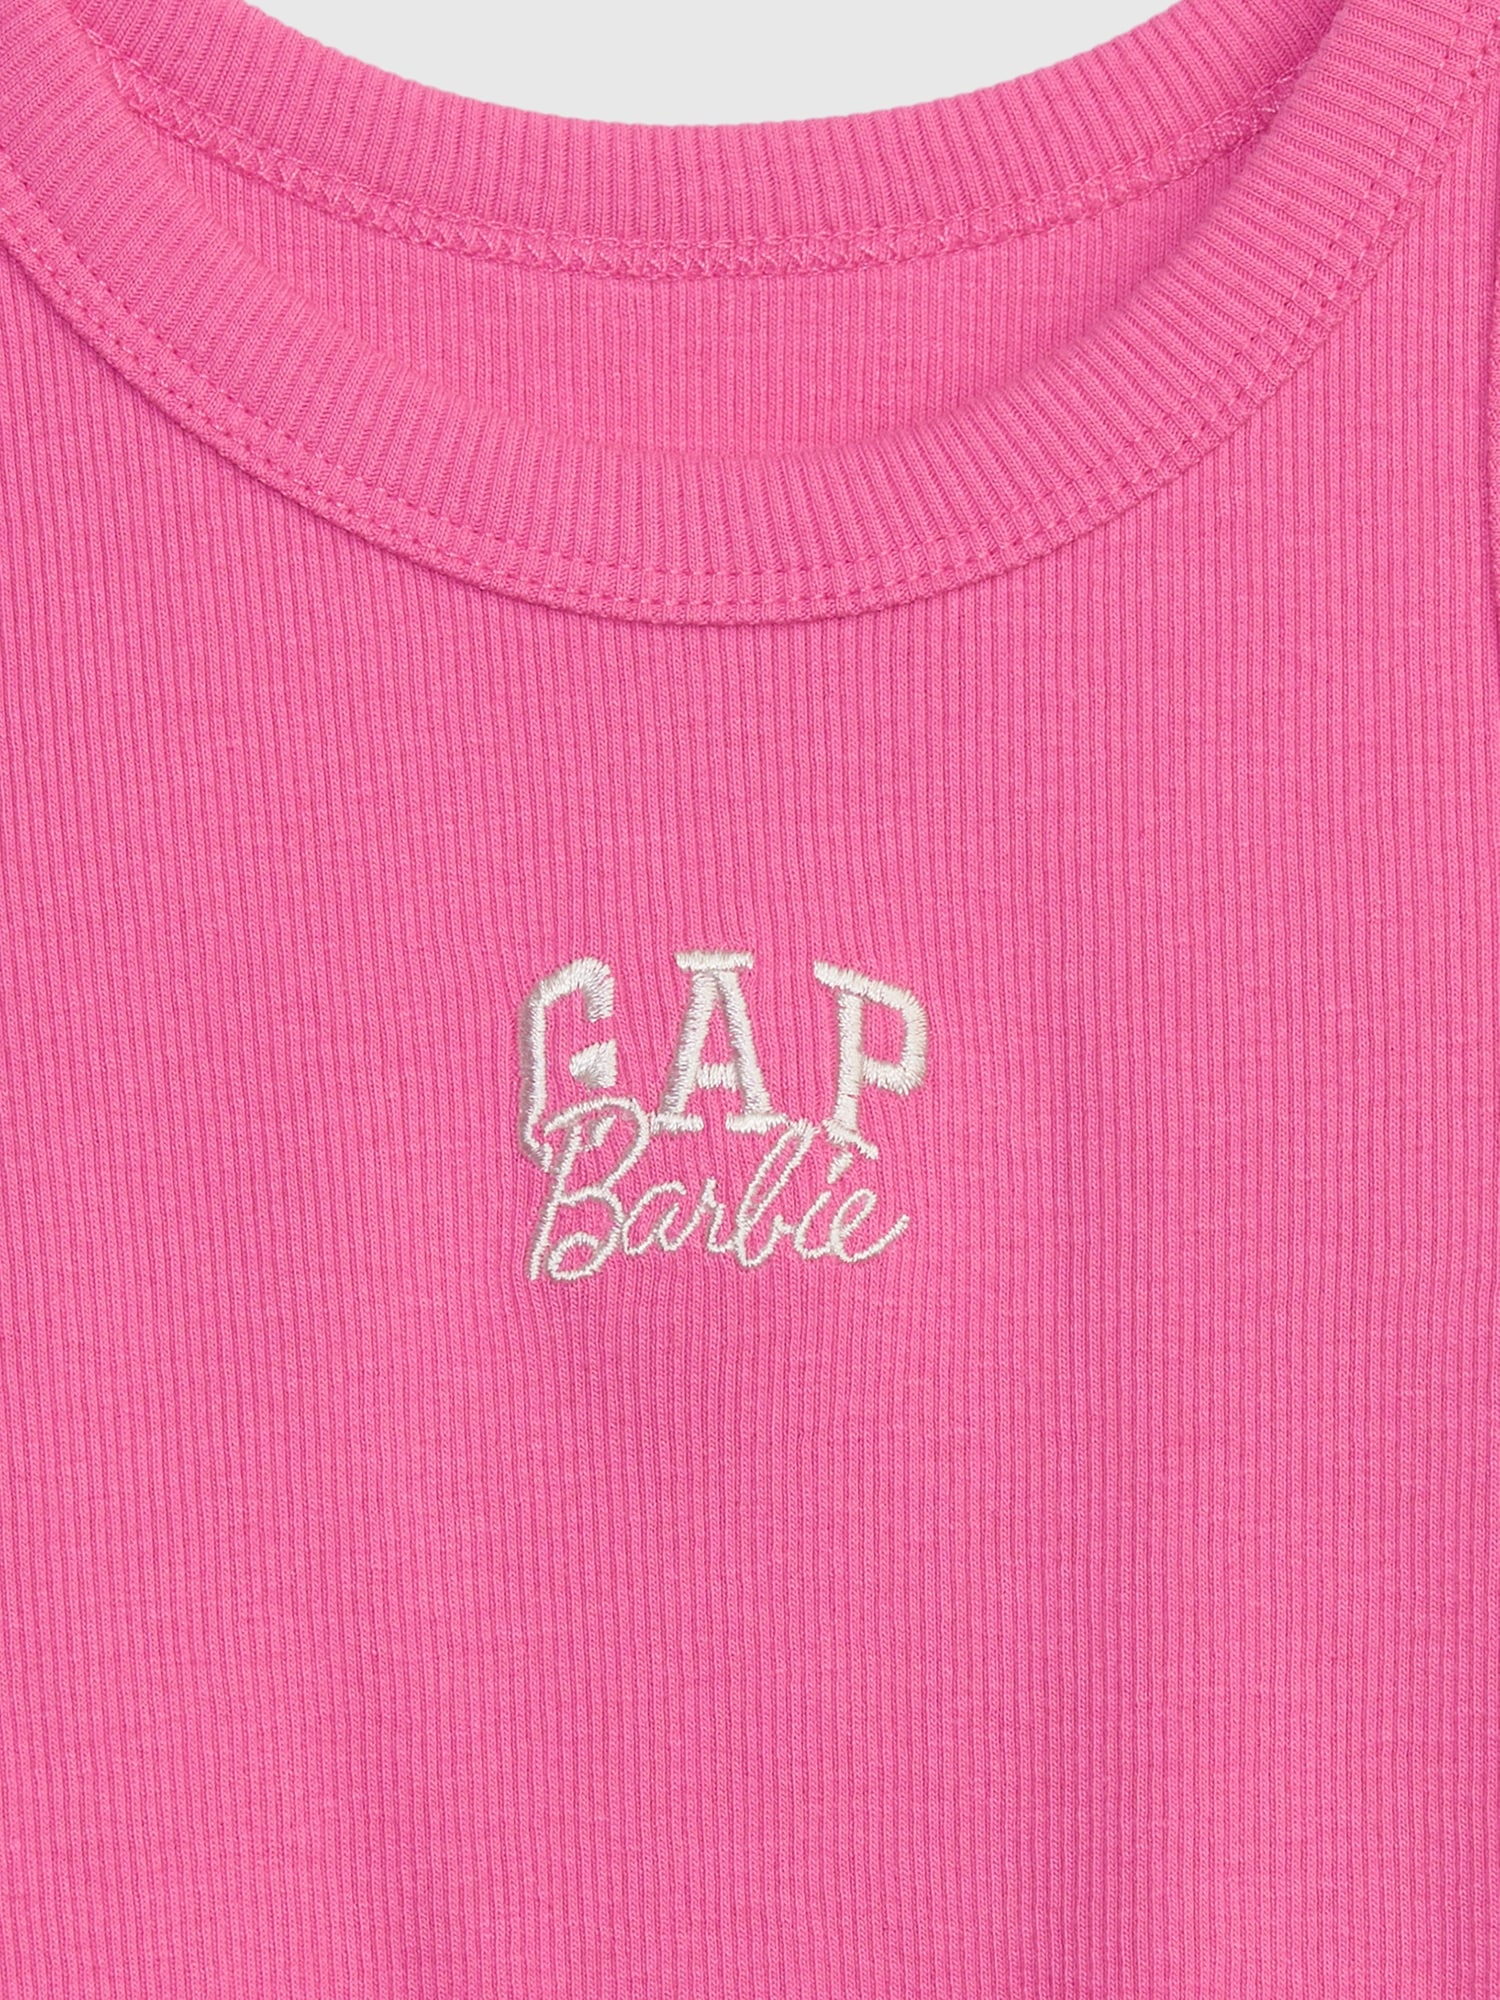 Gap × Barbie™ Toddler Arch Logo Tank Top | Gap